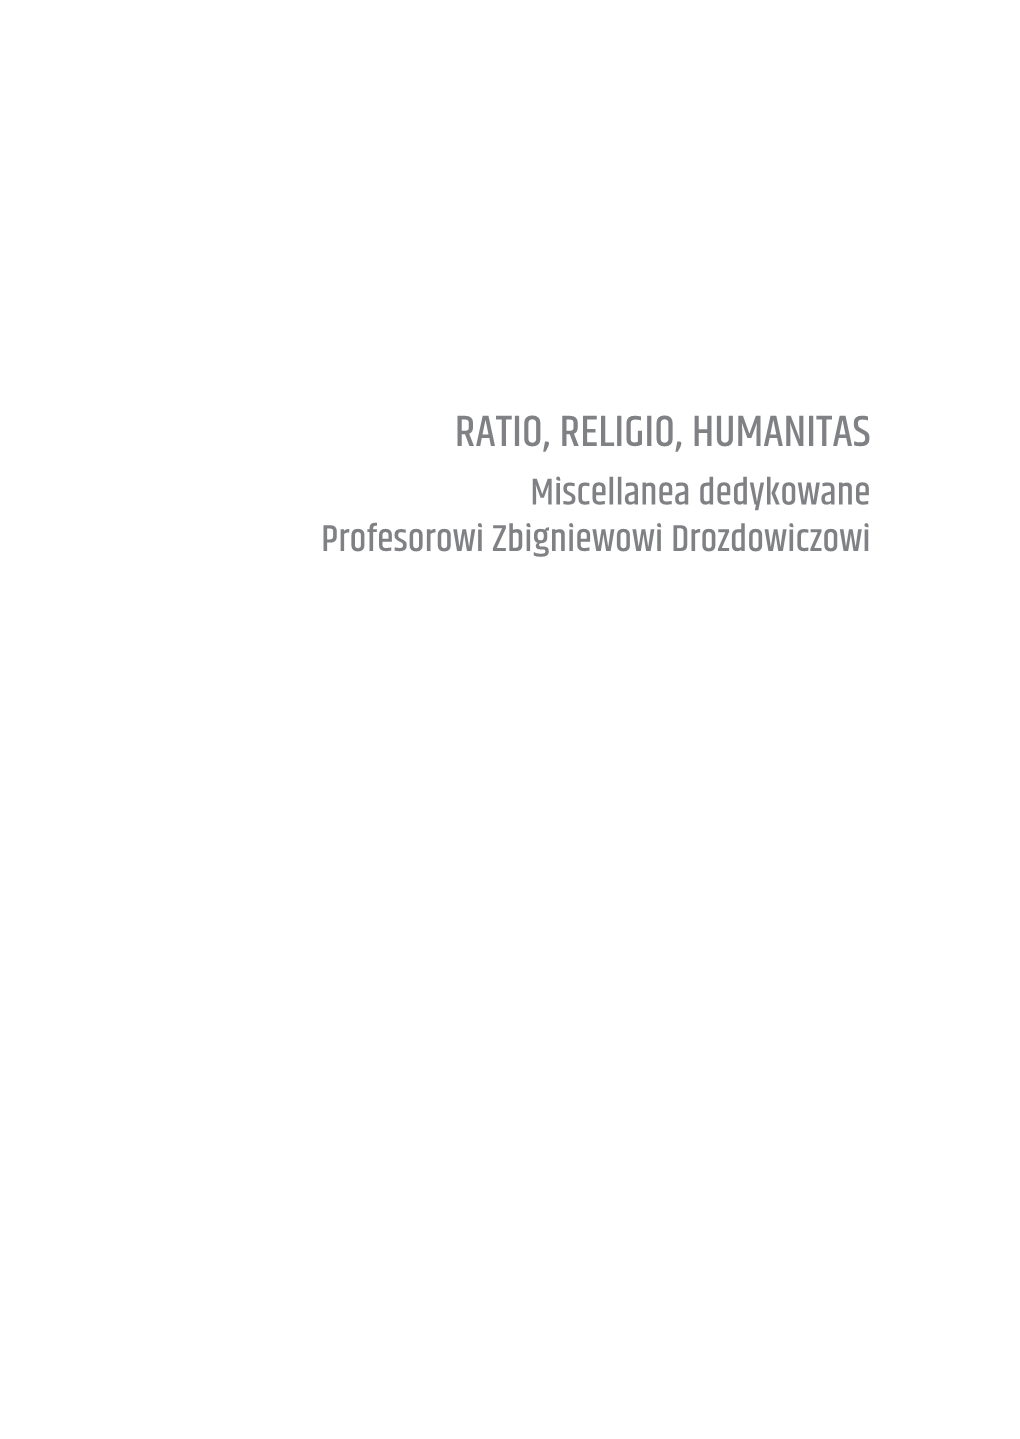 Ratio, Religio, Humanitas Miscellanea Dedykowane Profesorowi Zbigniewowi Drozdowiczowi